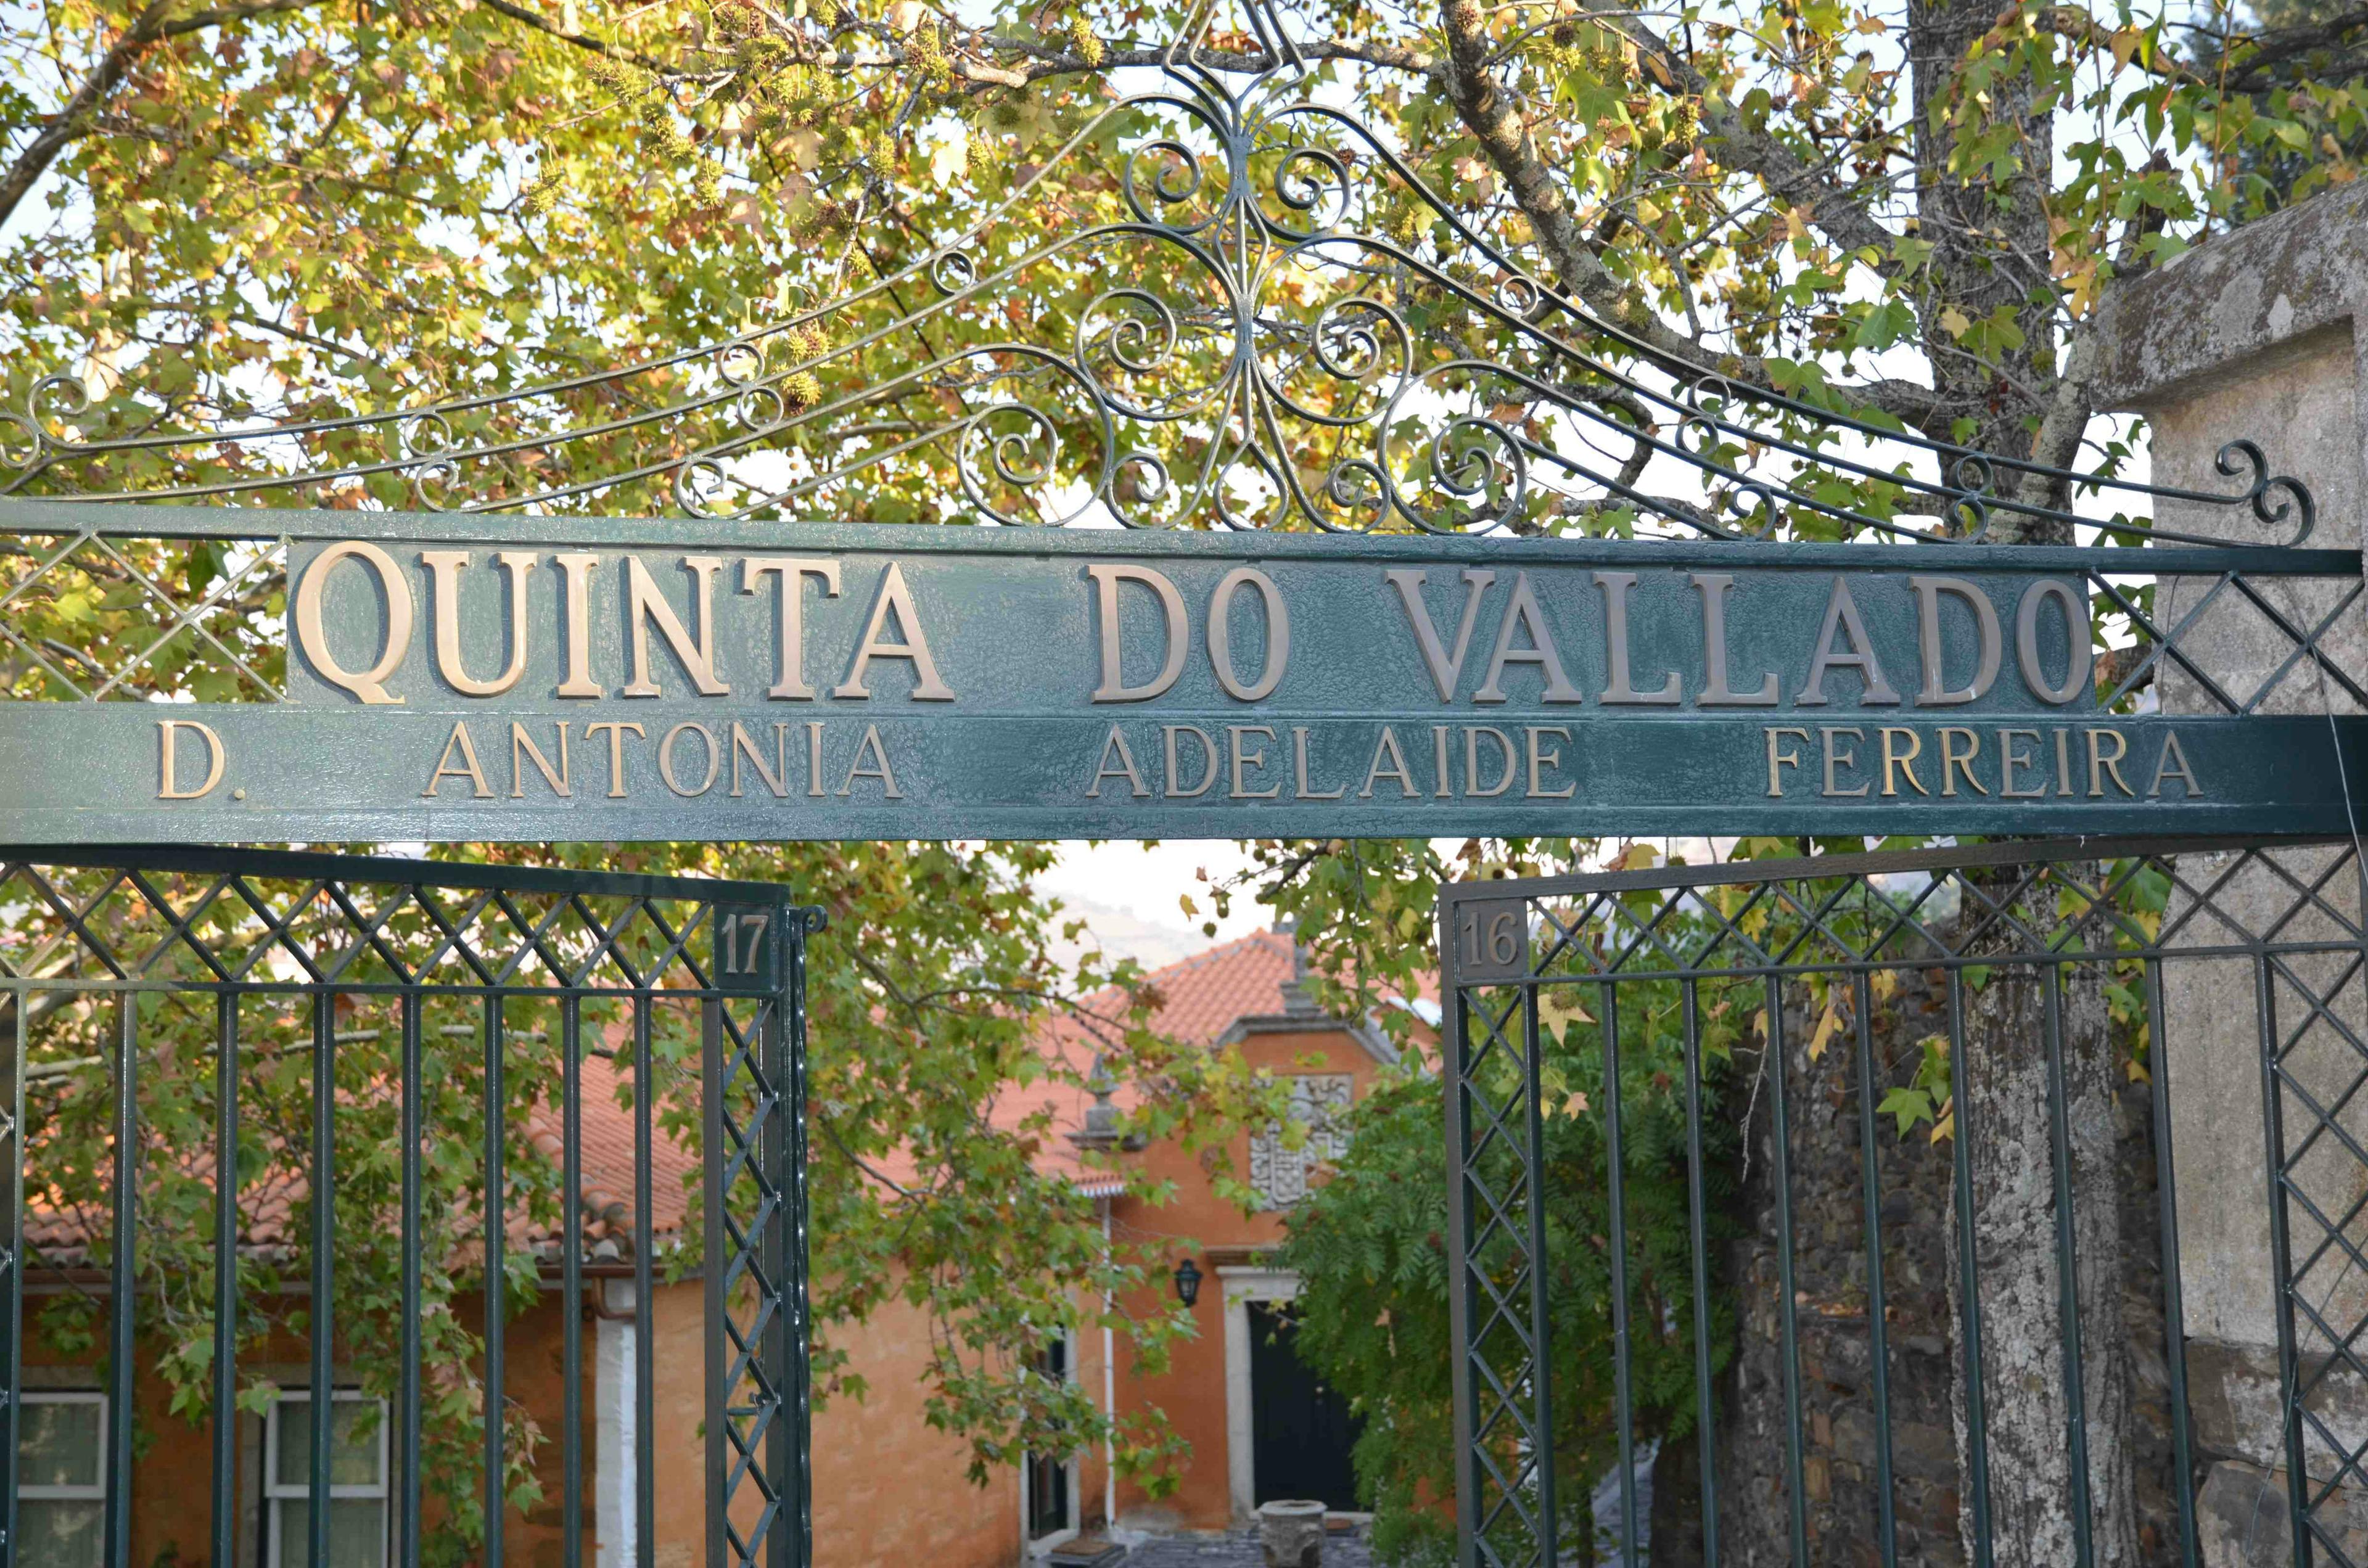 Quinta do vallado - Ett av Portugals bästa vinhus.